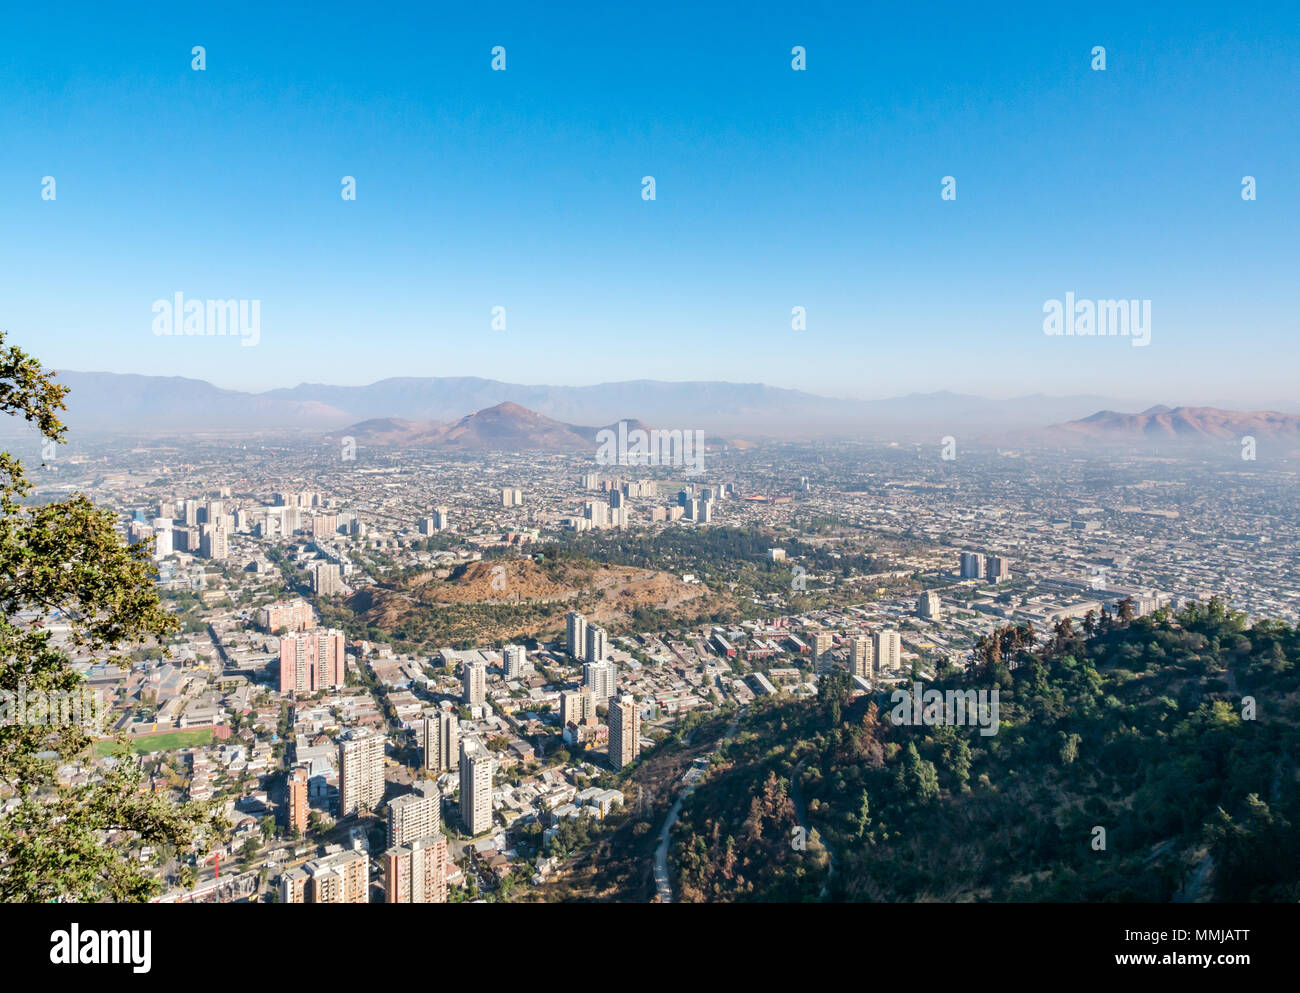 Paesaggio urbano vista dalla collina di San Cristobal, Santiago del Cile, con lo smog visibili guardando verso la Andes pedemontana Foto Stock